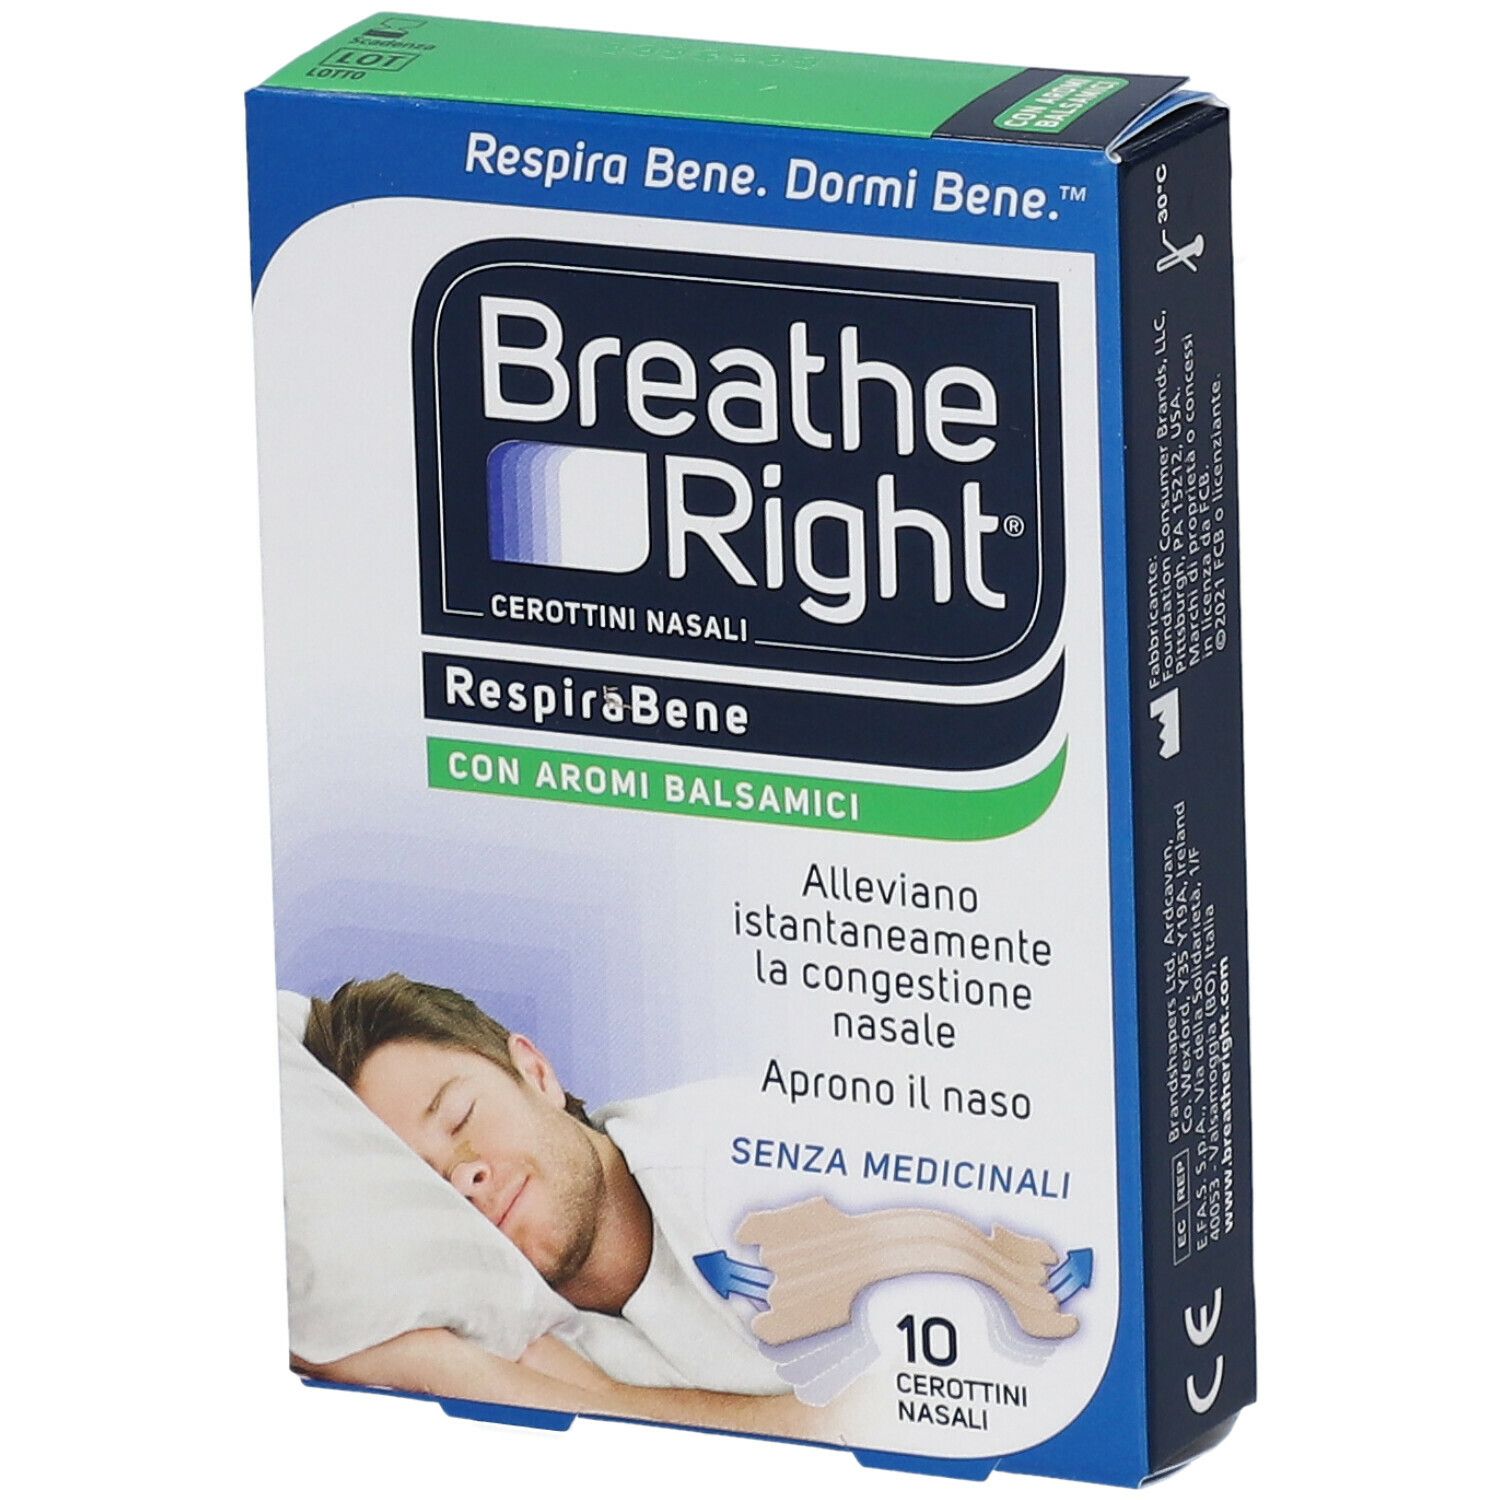 Image of Breathe Right® RespiraBene Con Aromi Balsamici